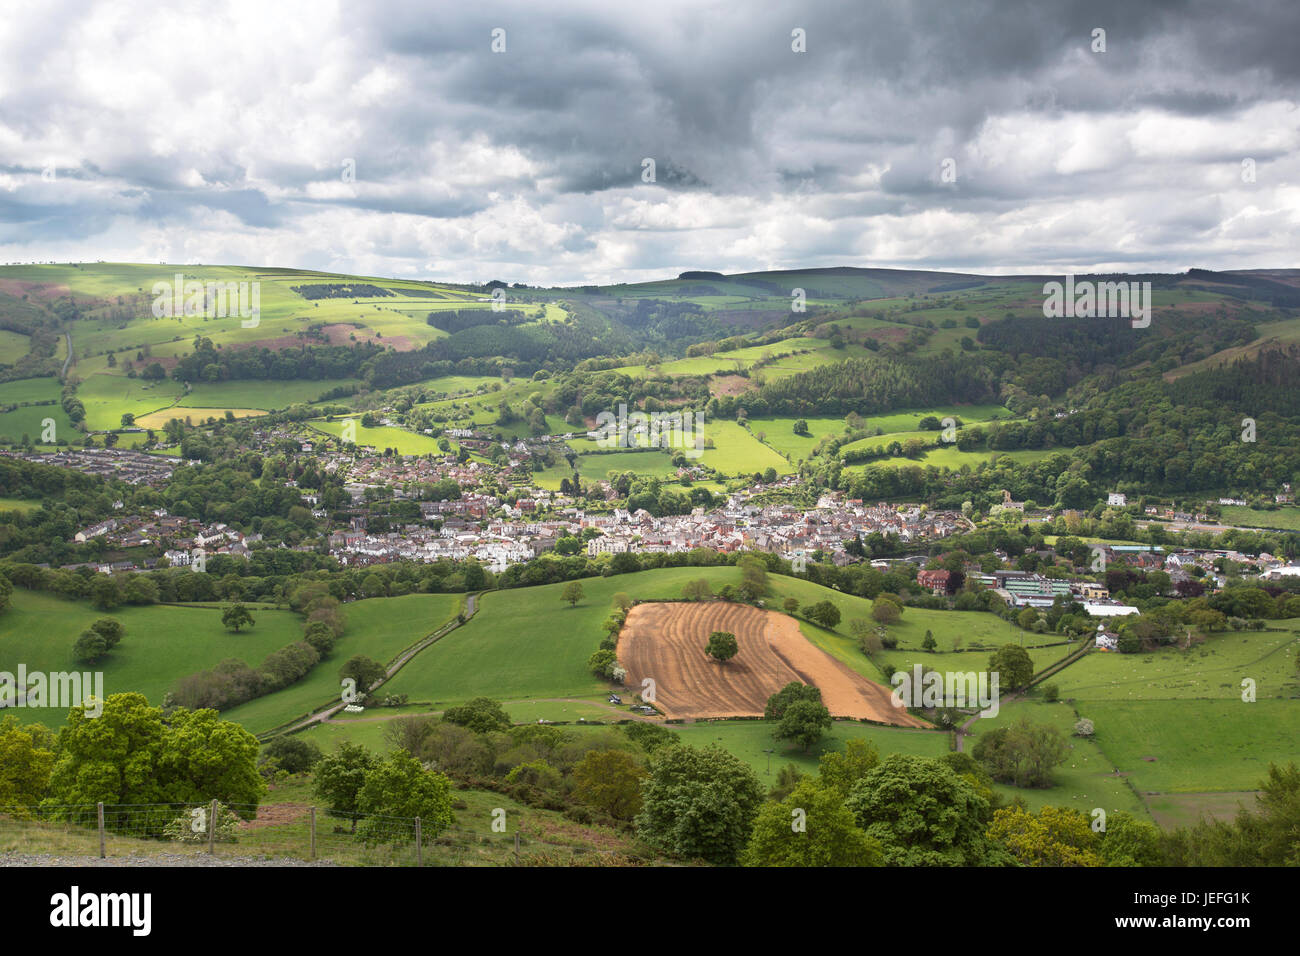 La ville de Llangollen, Wales. Vue aérienne de la pittoresque ville galloise de Llangollen, dans le comté de Denbighshire. Banque D'Images